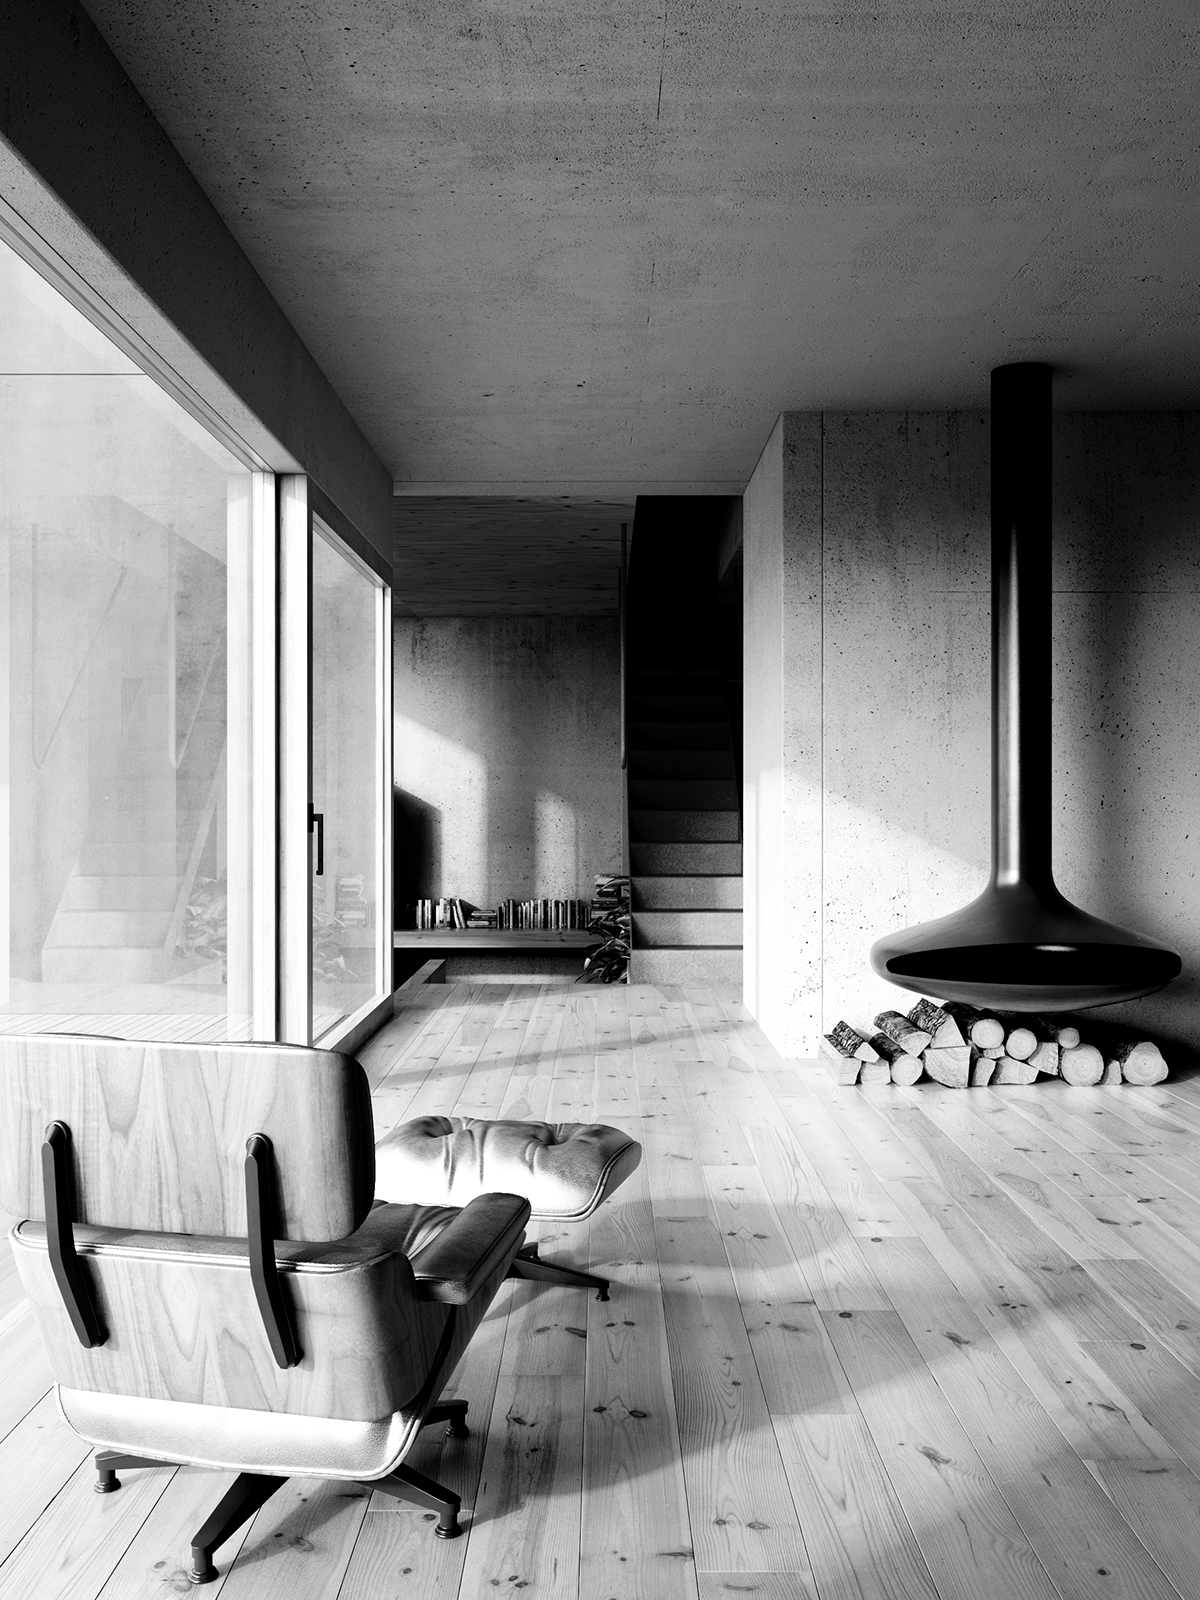 Corten concrete house visualization poland architectural visualization